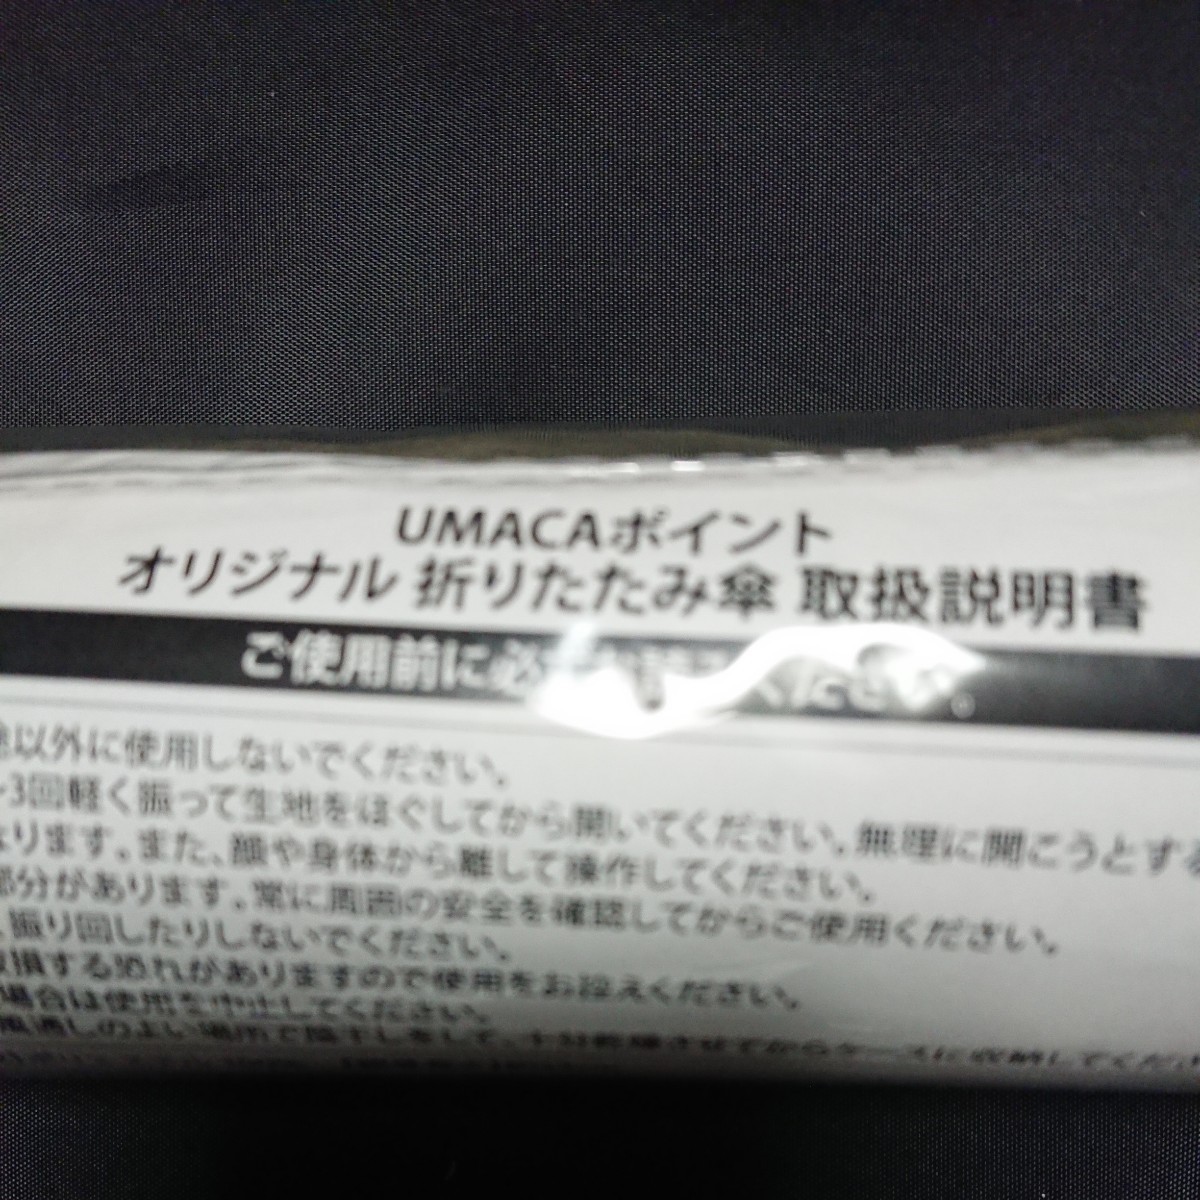 JRA UMACA отметка оригинал складной зонт бесплатная доставка не продается 